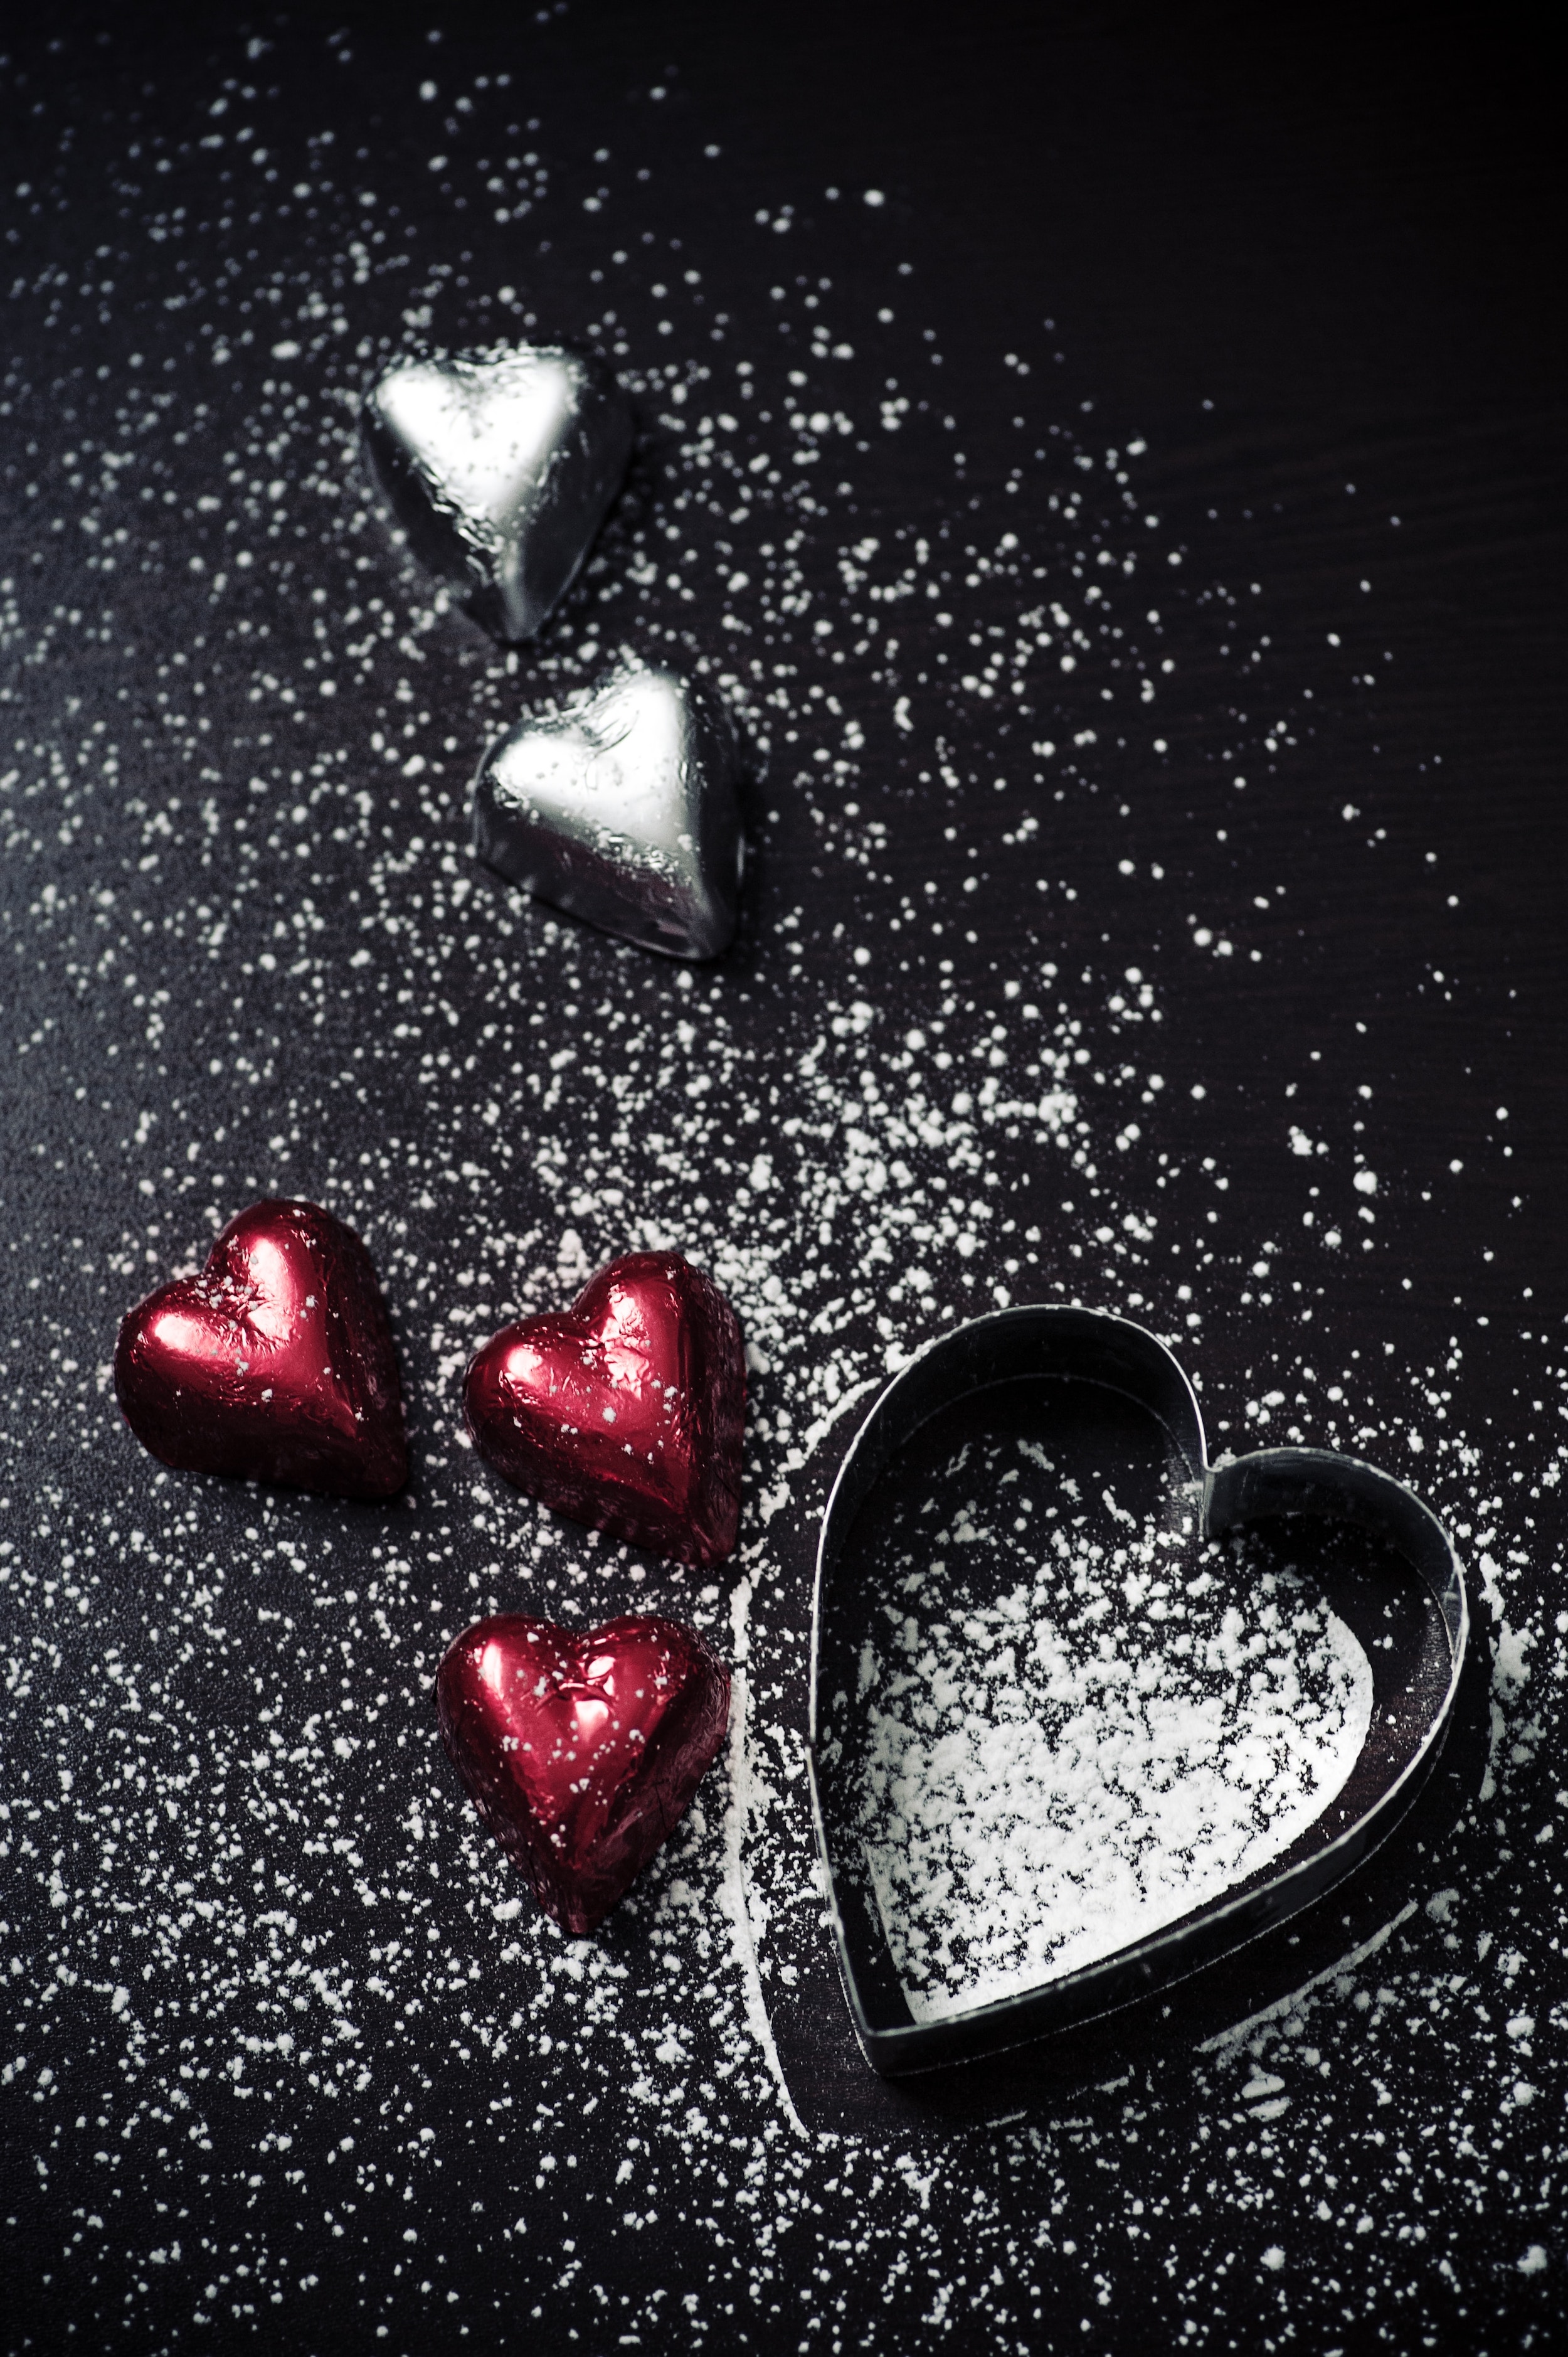 L’amore rende ciechi, ma non trascurare la sicurezza per un San Valentino senza imprevisti